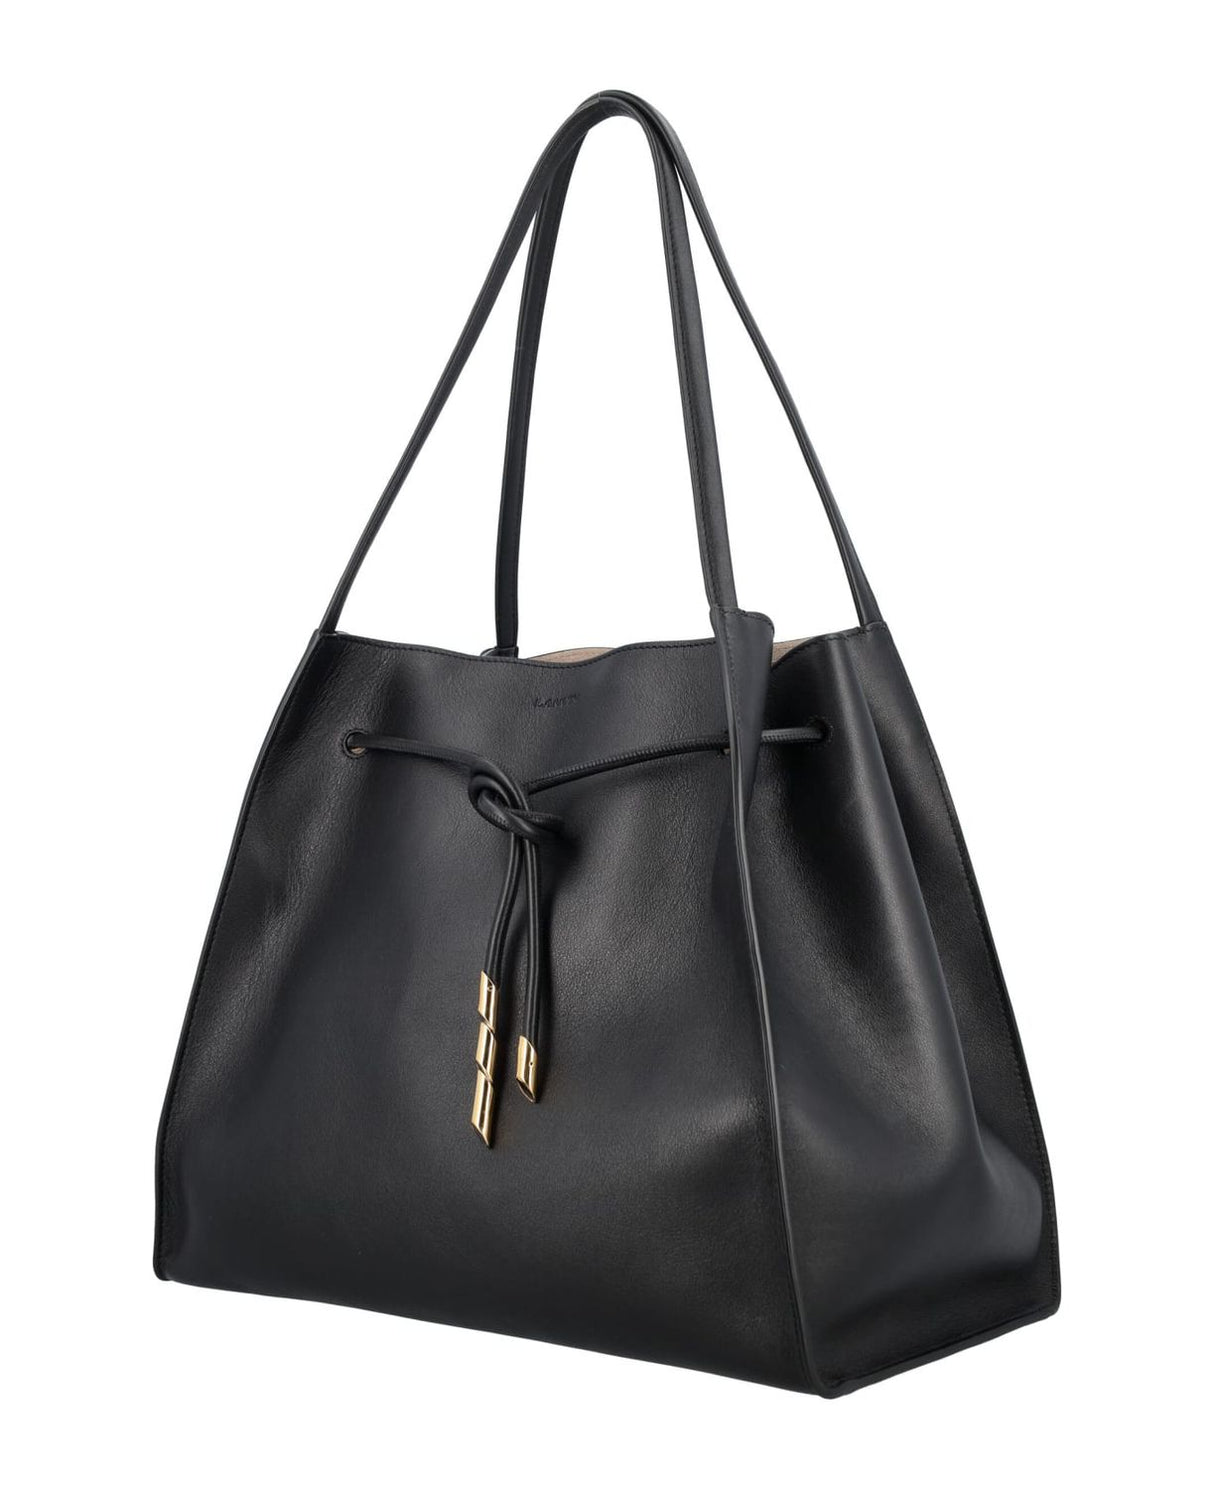 Túi cầm tay đính sequin da bóng màu đen cho phụ nữ - FW23